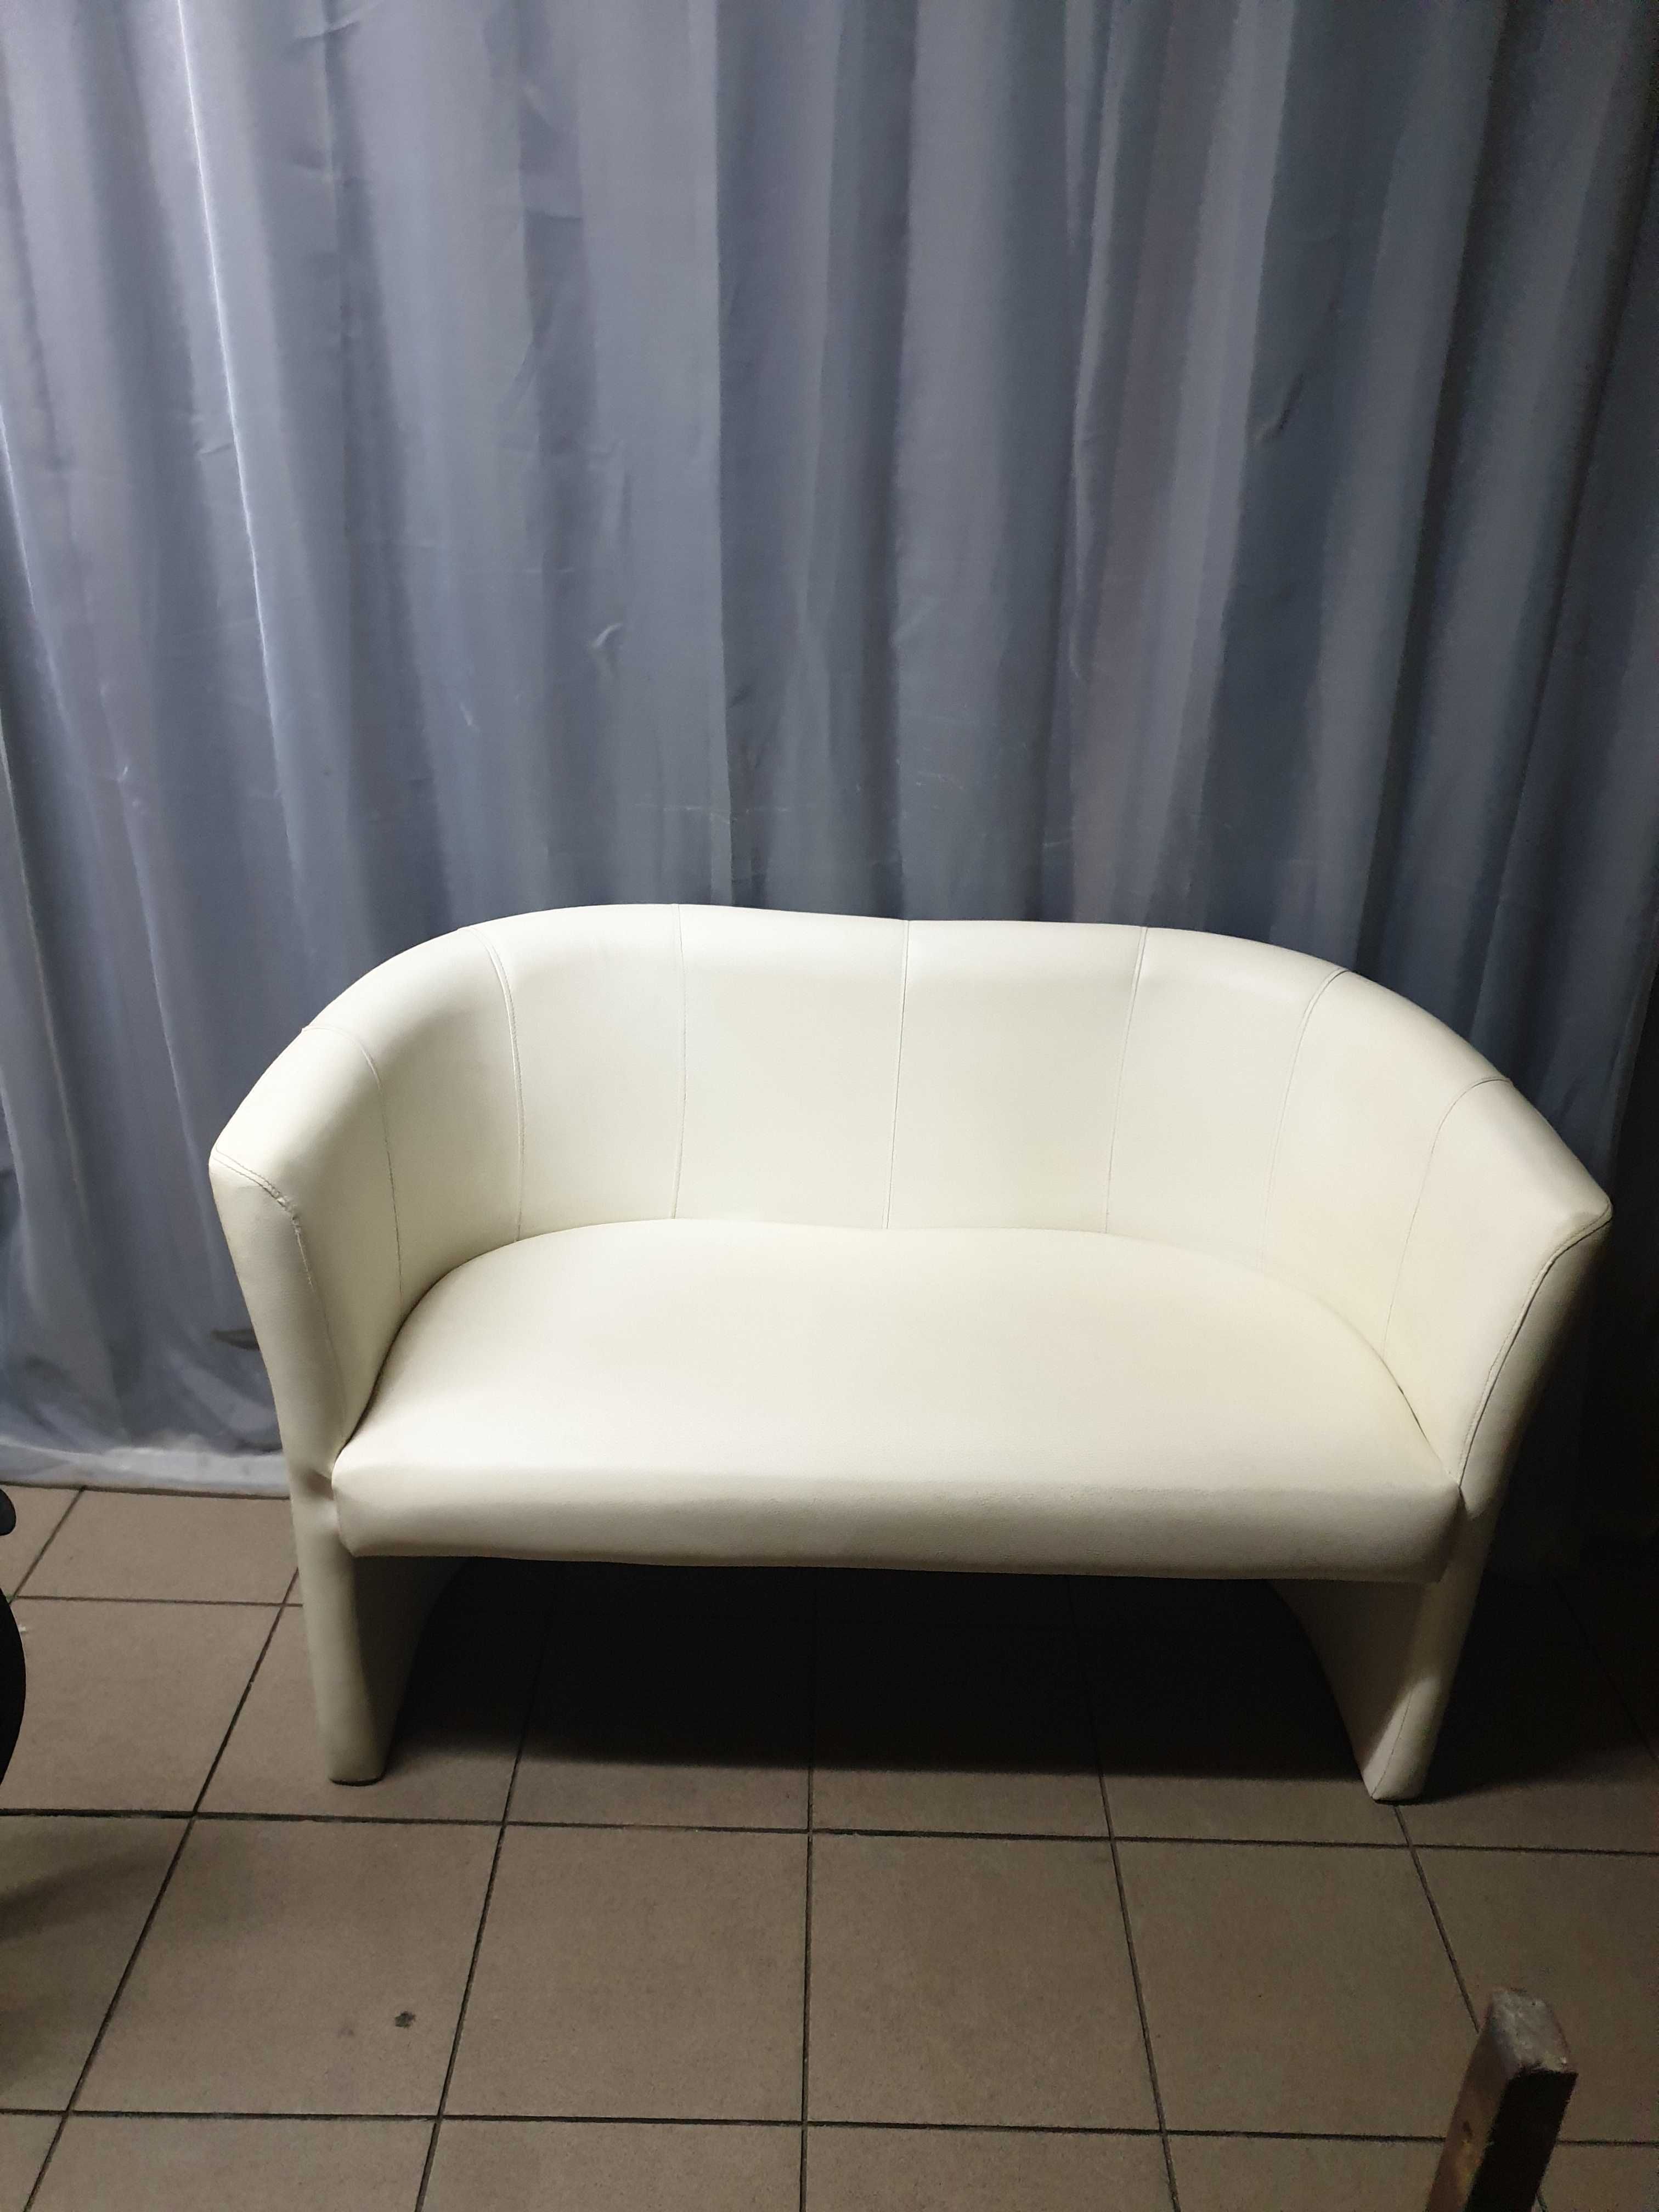 Sofa tm3 komfort biala jasna kanapa ecru bezowa skorzana do recepcji